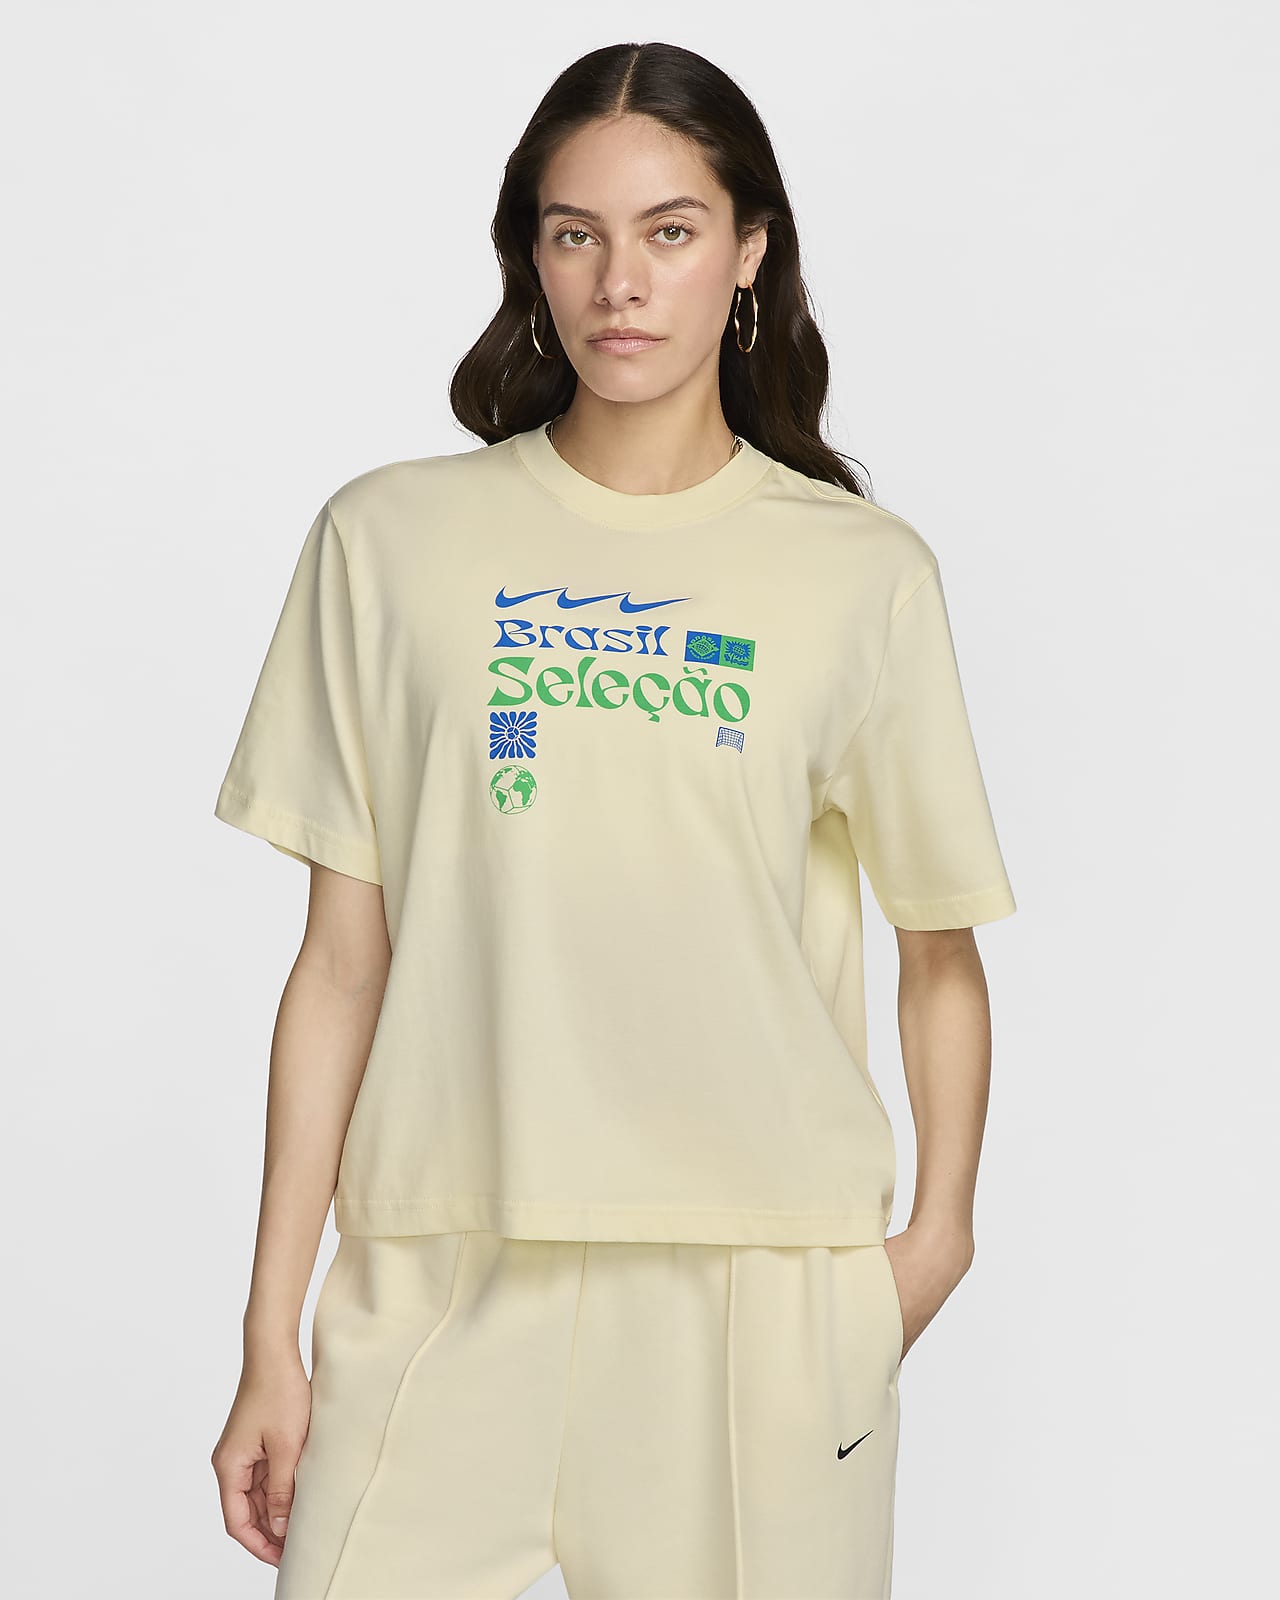 Brazil Women's Nike Soccer T-Shirt